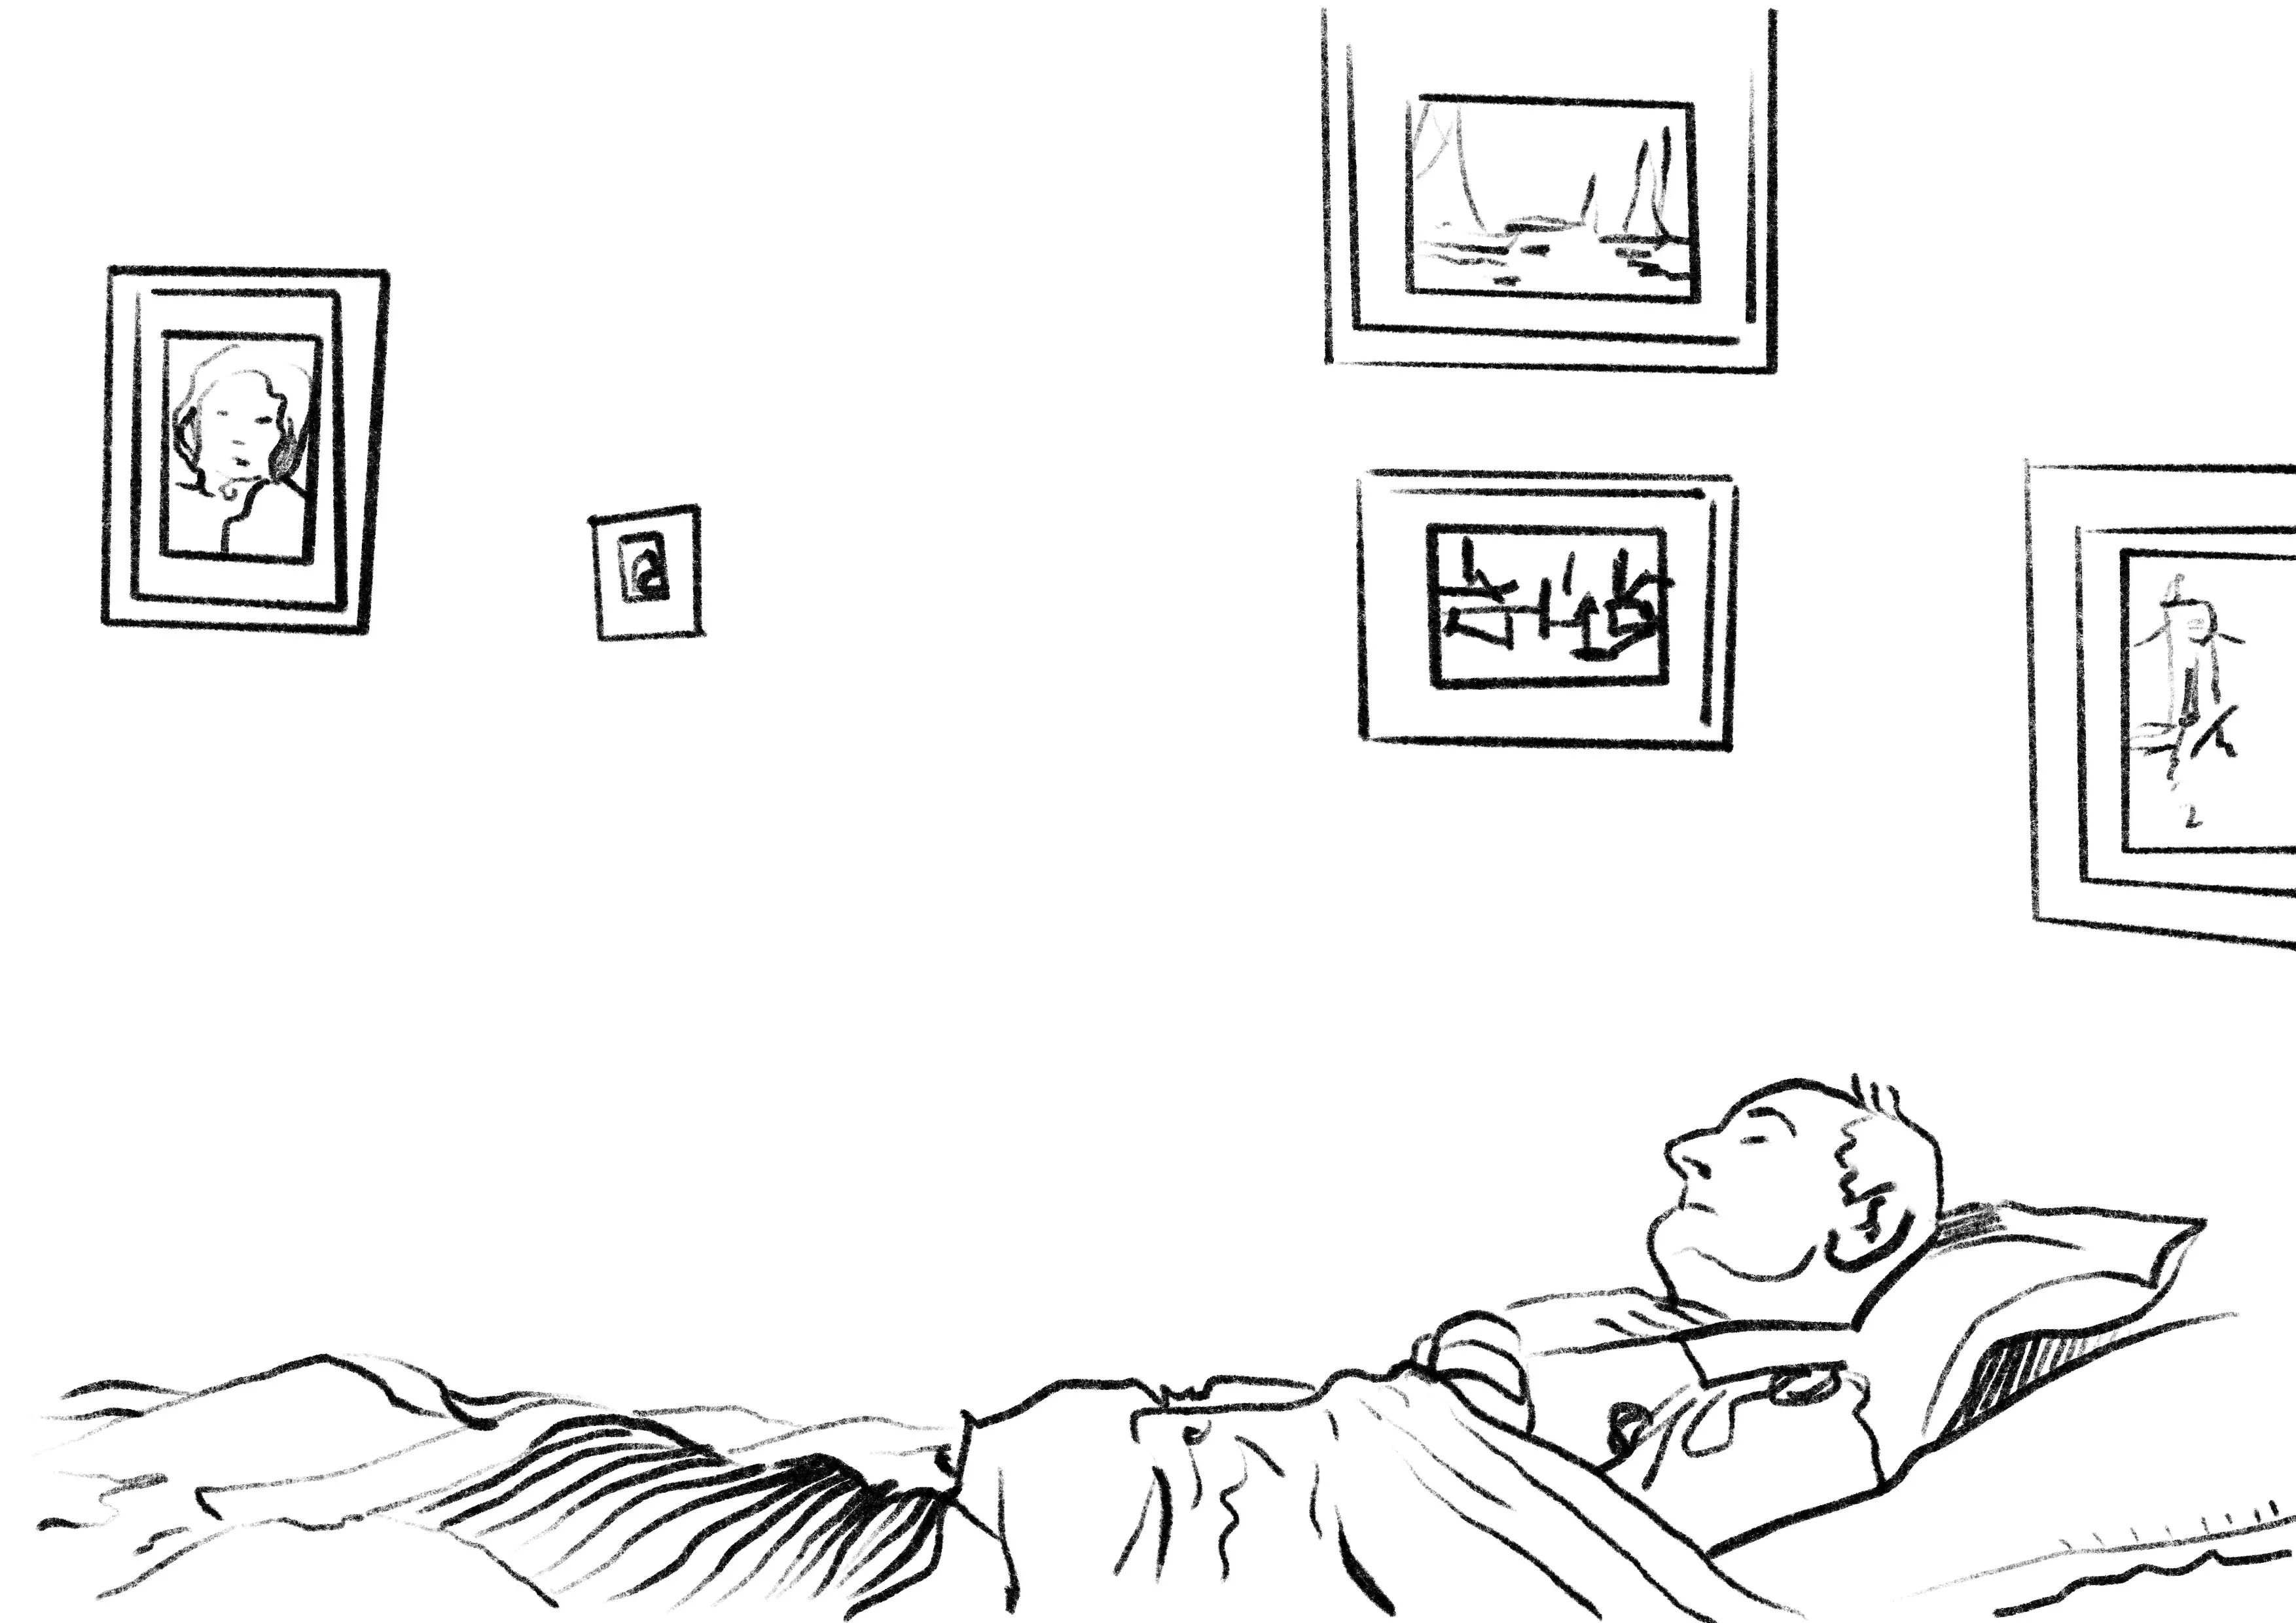 Prostokątny rysunek – czarne linie na białym tle. Całą dolną część rysunku wypełnia leżący w łóżku, pod kołdrą, umierający (lub martwy) mężczyzna. Łóżko przylega do ściany, na której powieszone są prostokątne obrazki oprawione w ramki. 